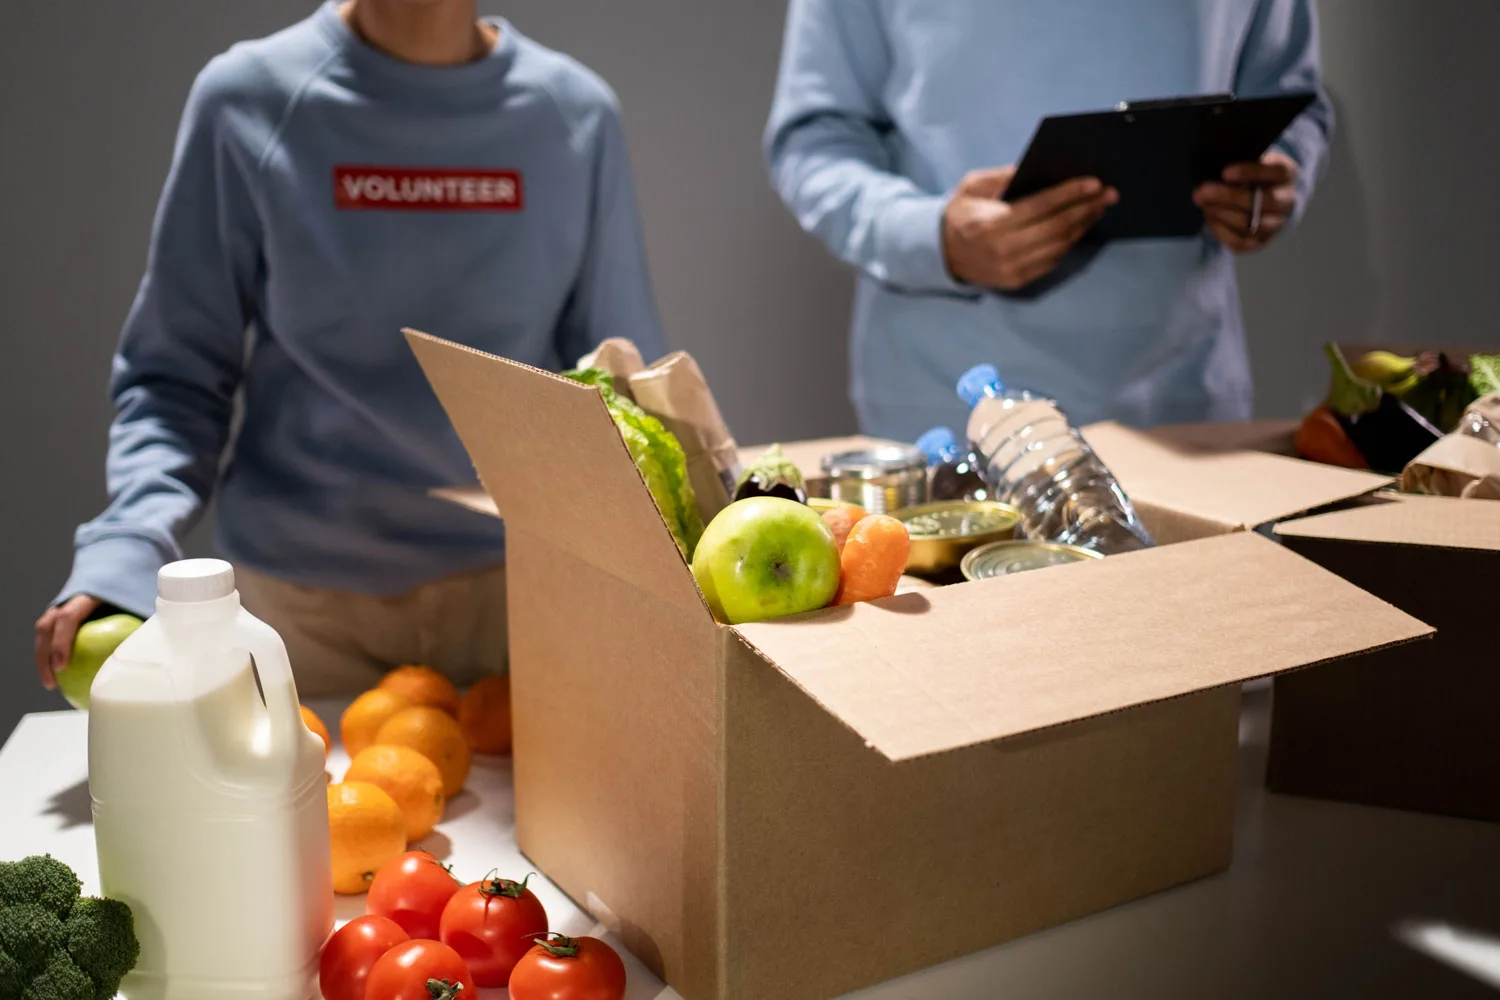 food pantry volunteers organizing produce in cardboard boxes